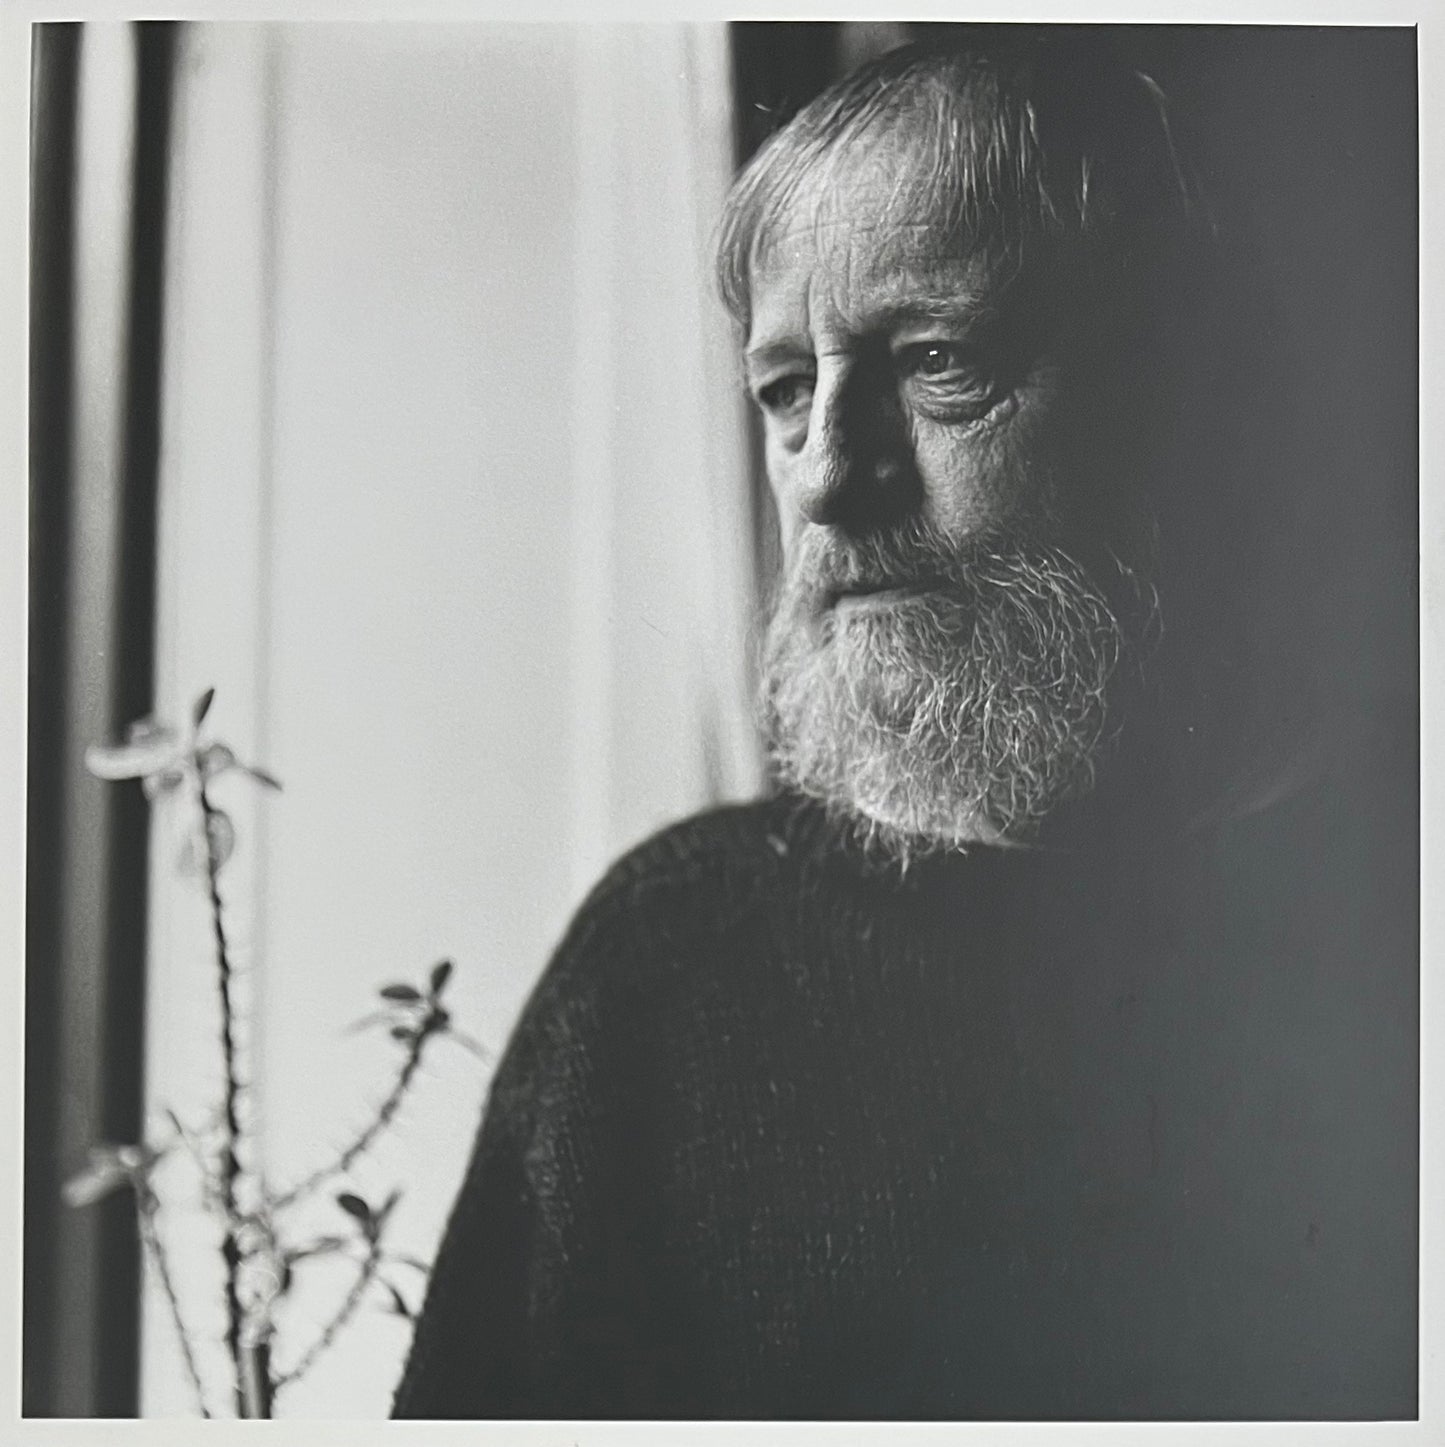 Lars Schwander. Portrait of Bent Stubbe Teglbjærg, 1992